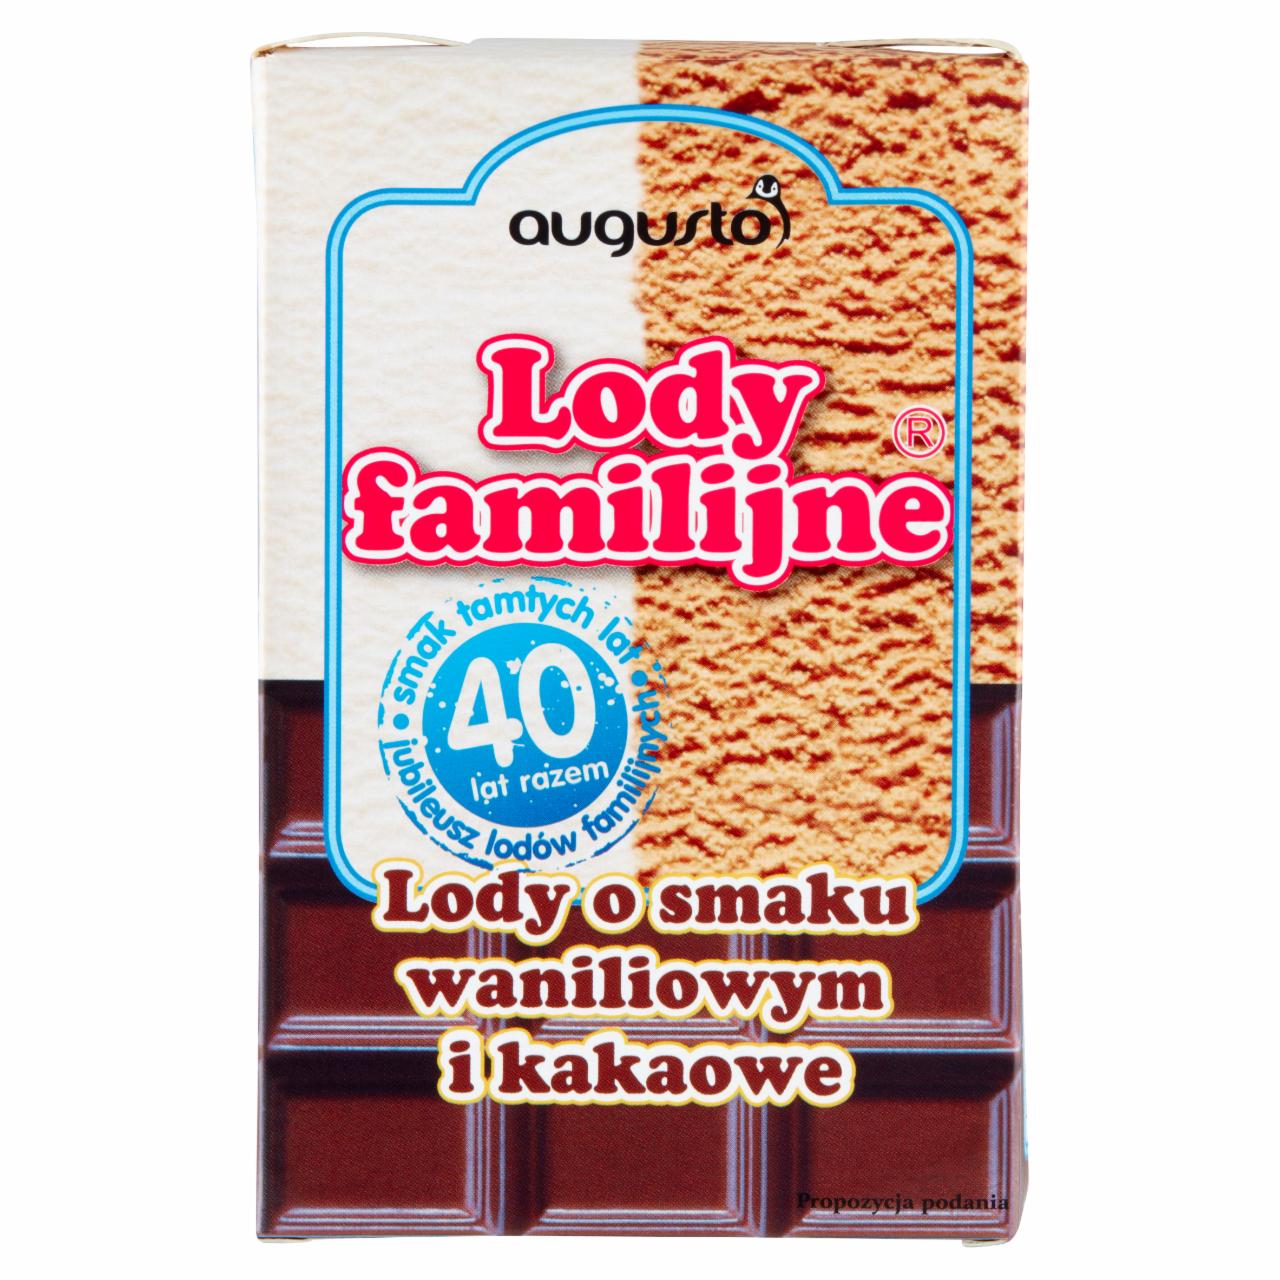 Zdjęcia - Augusto Lody familijne Lody o smaku waniliowym i kakaowe 480 ml